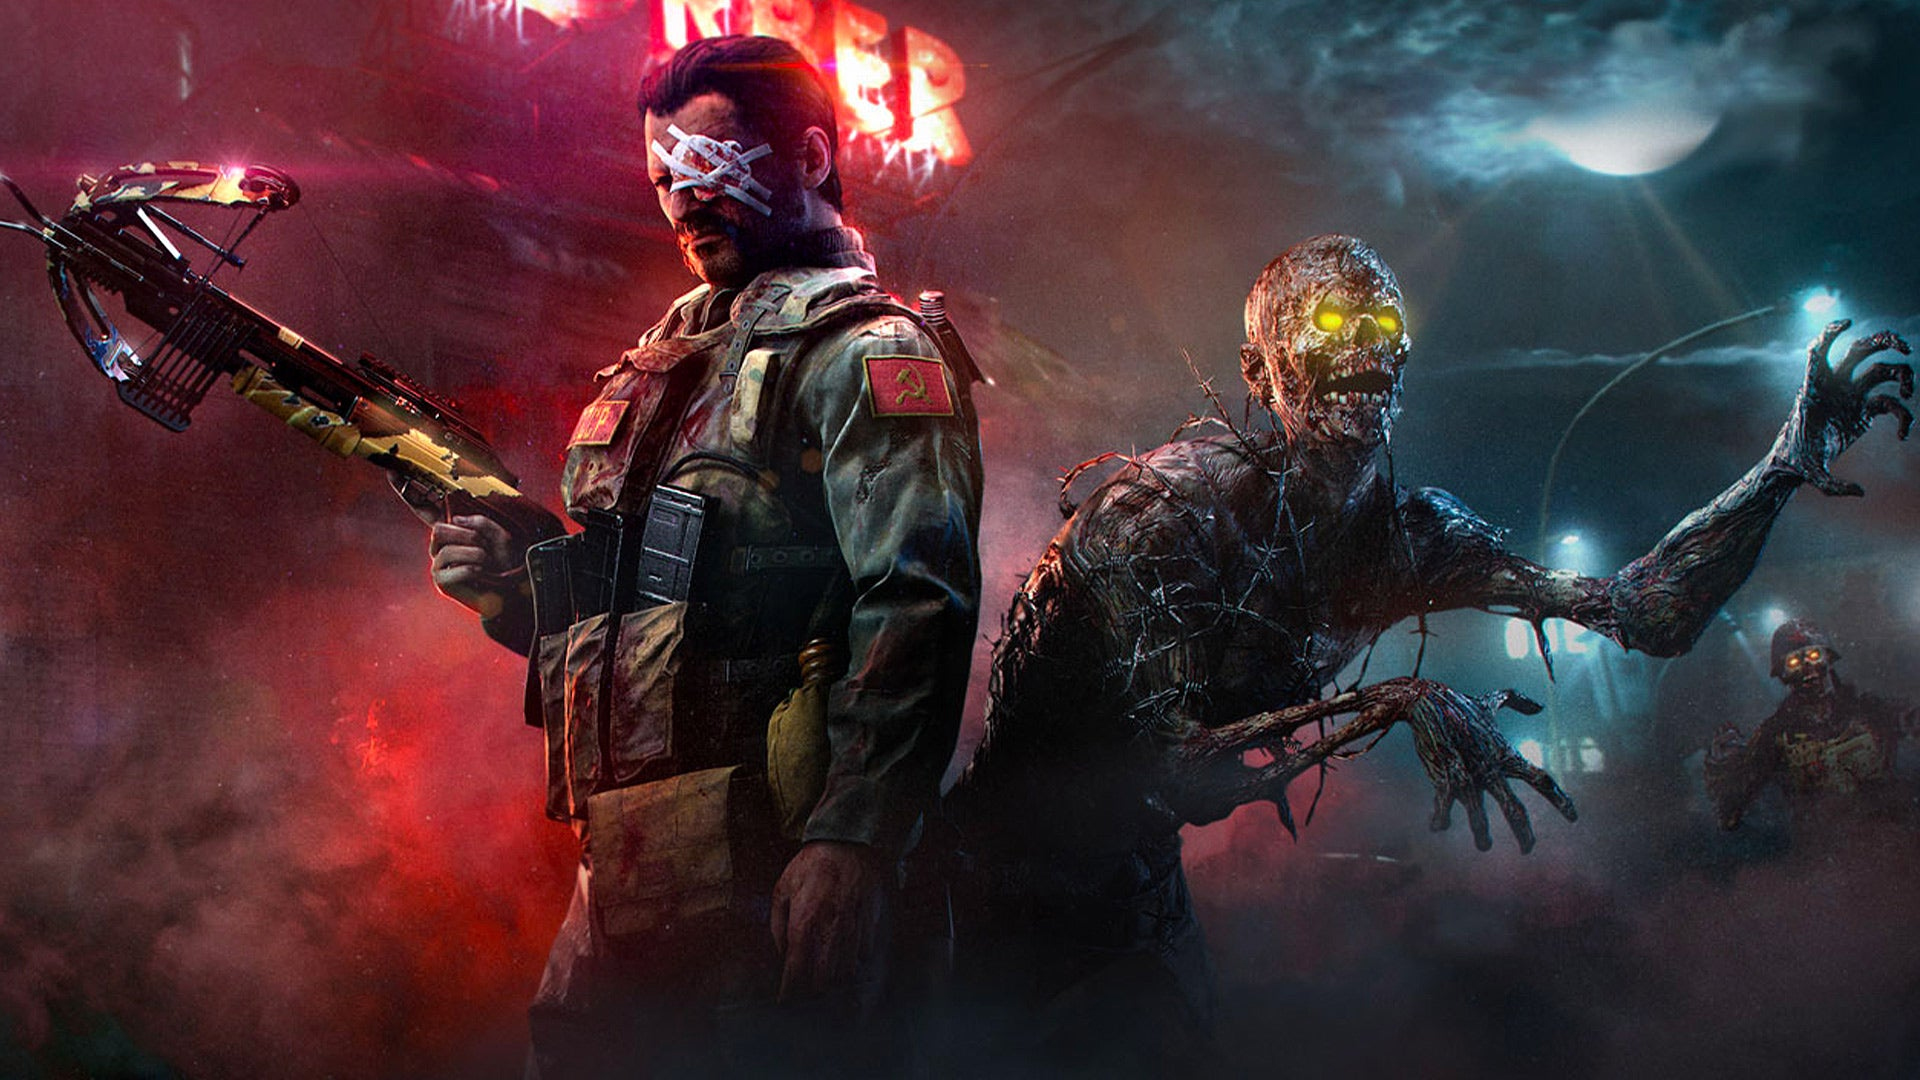 Игра Axed CoD Zombies была бы «веселой, манерной и экспериментальной», говорит бывший разработчик